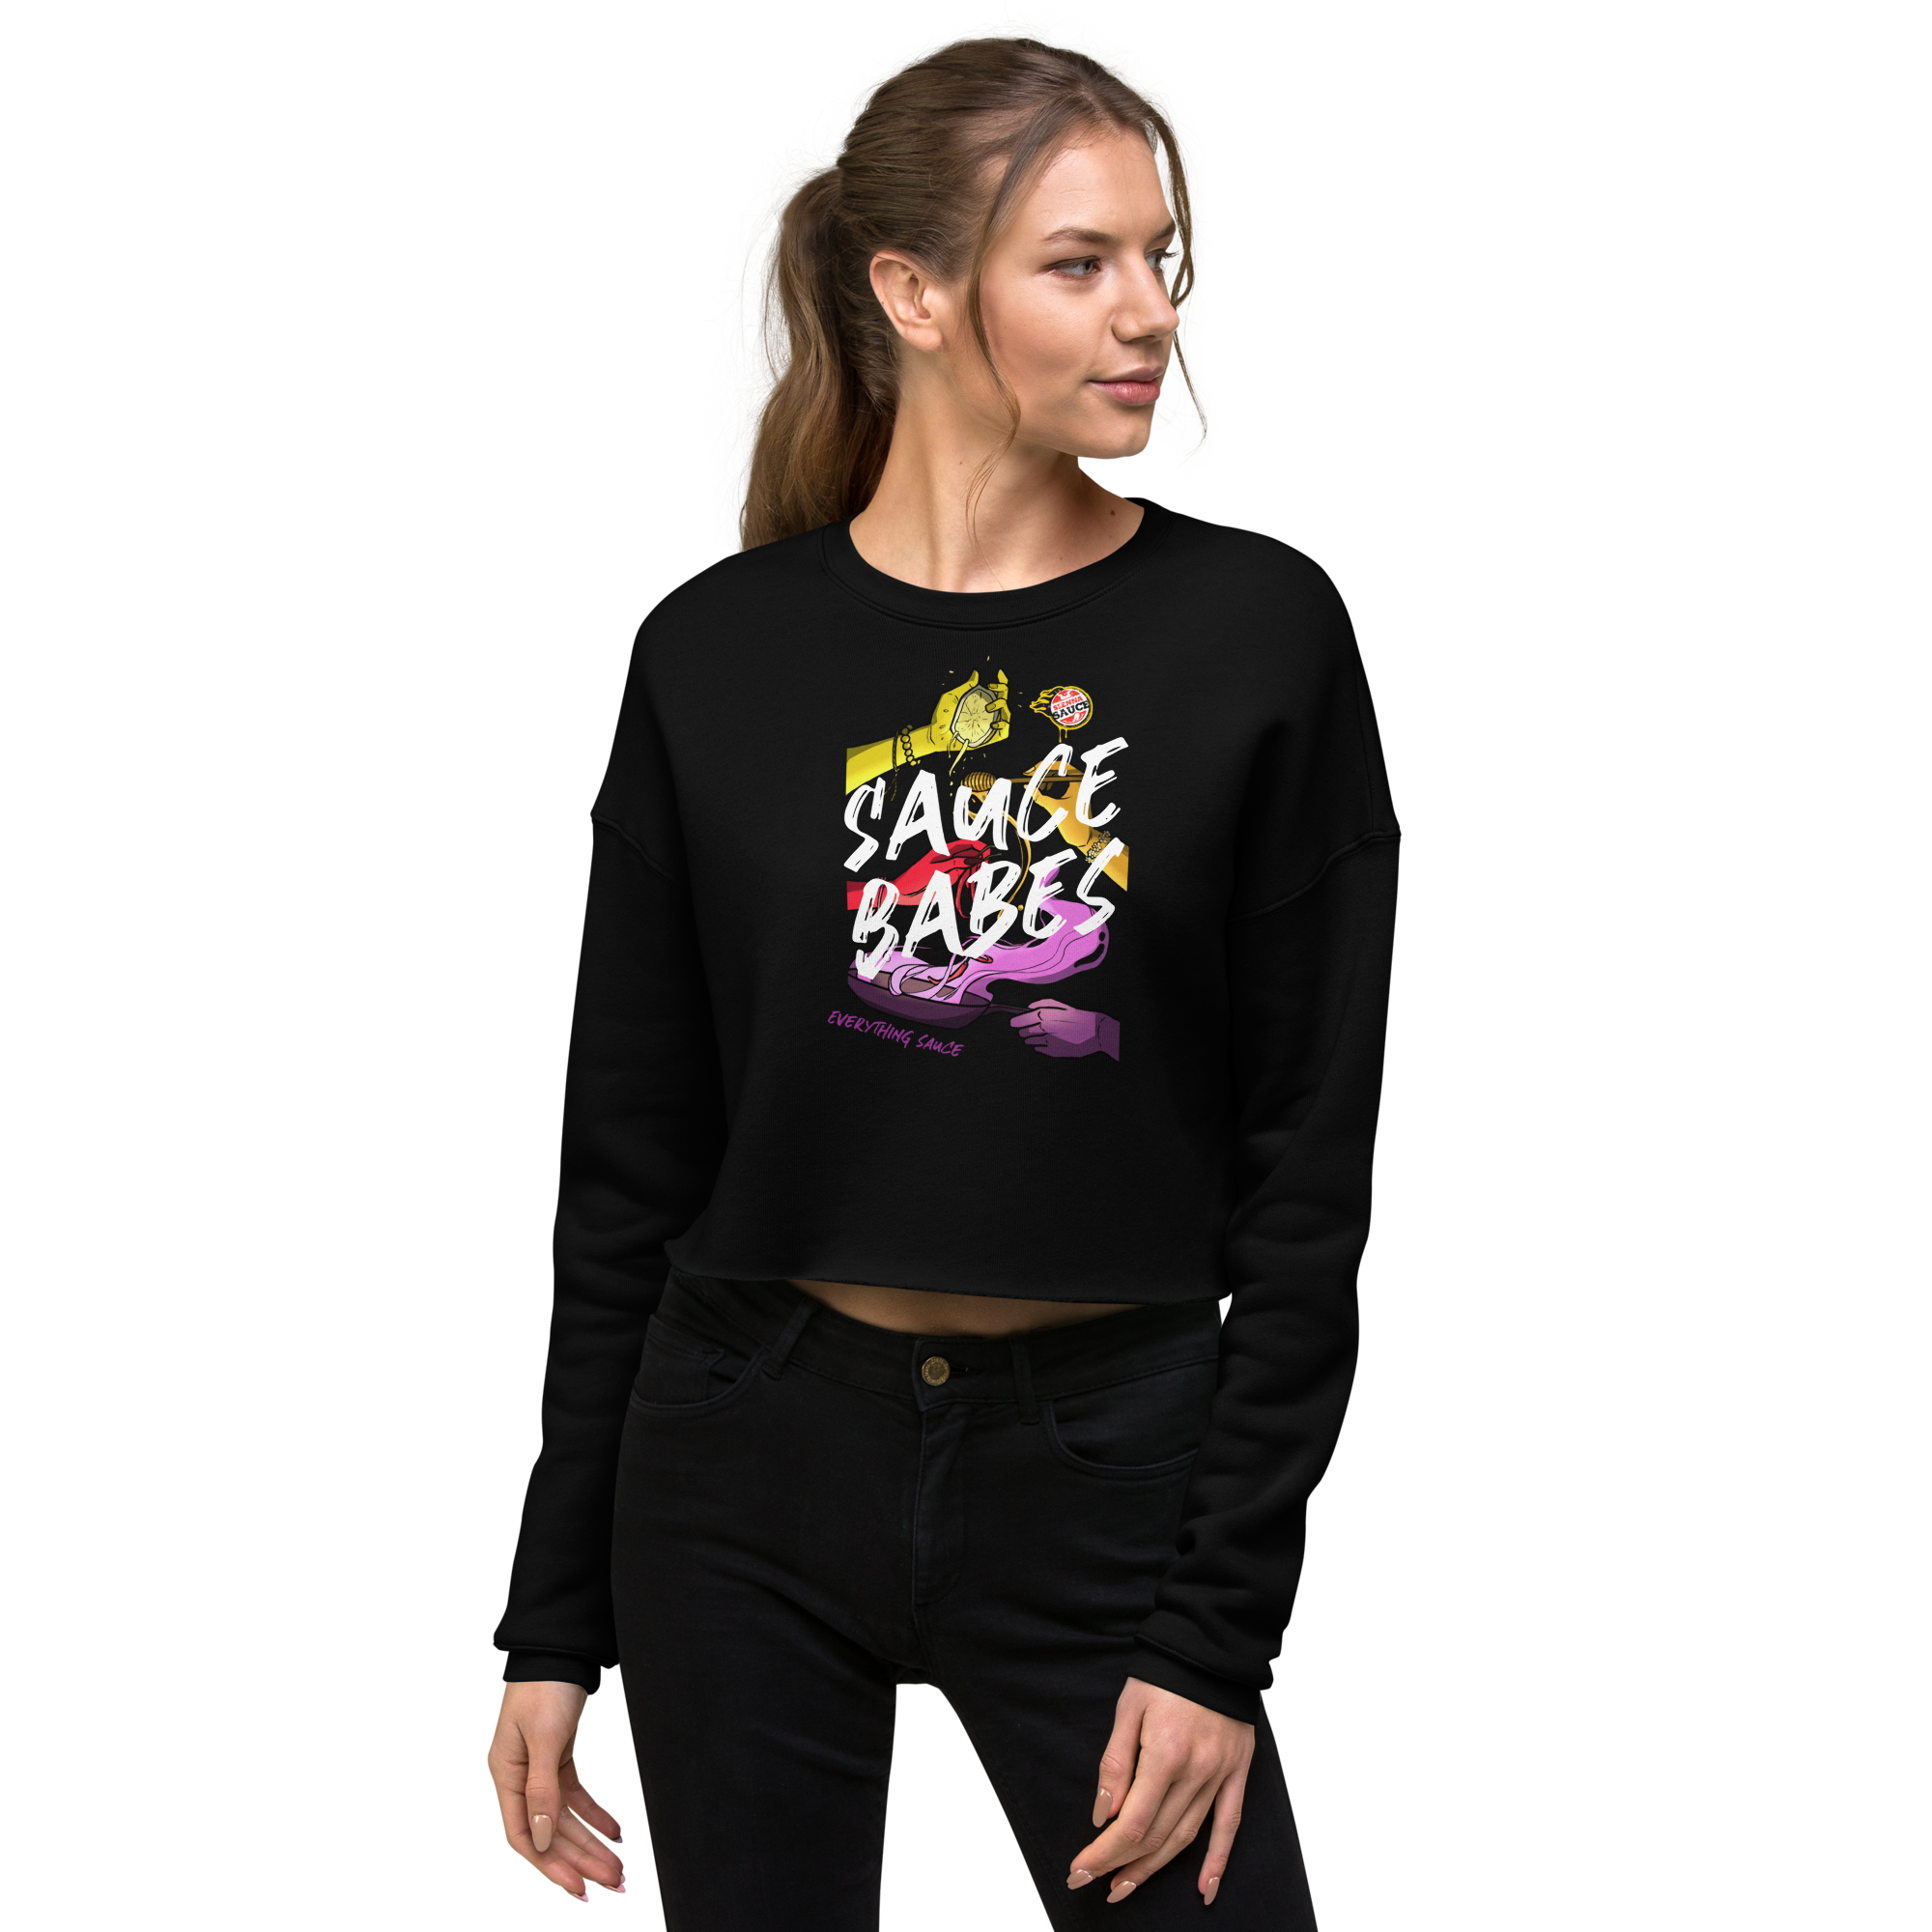 Sauce Babes Sweatshirt (Crop)